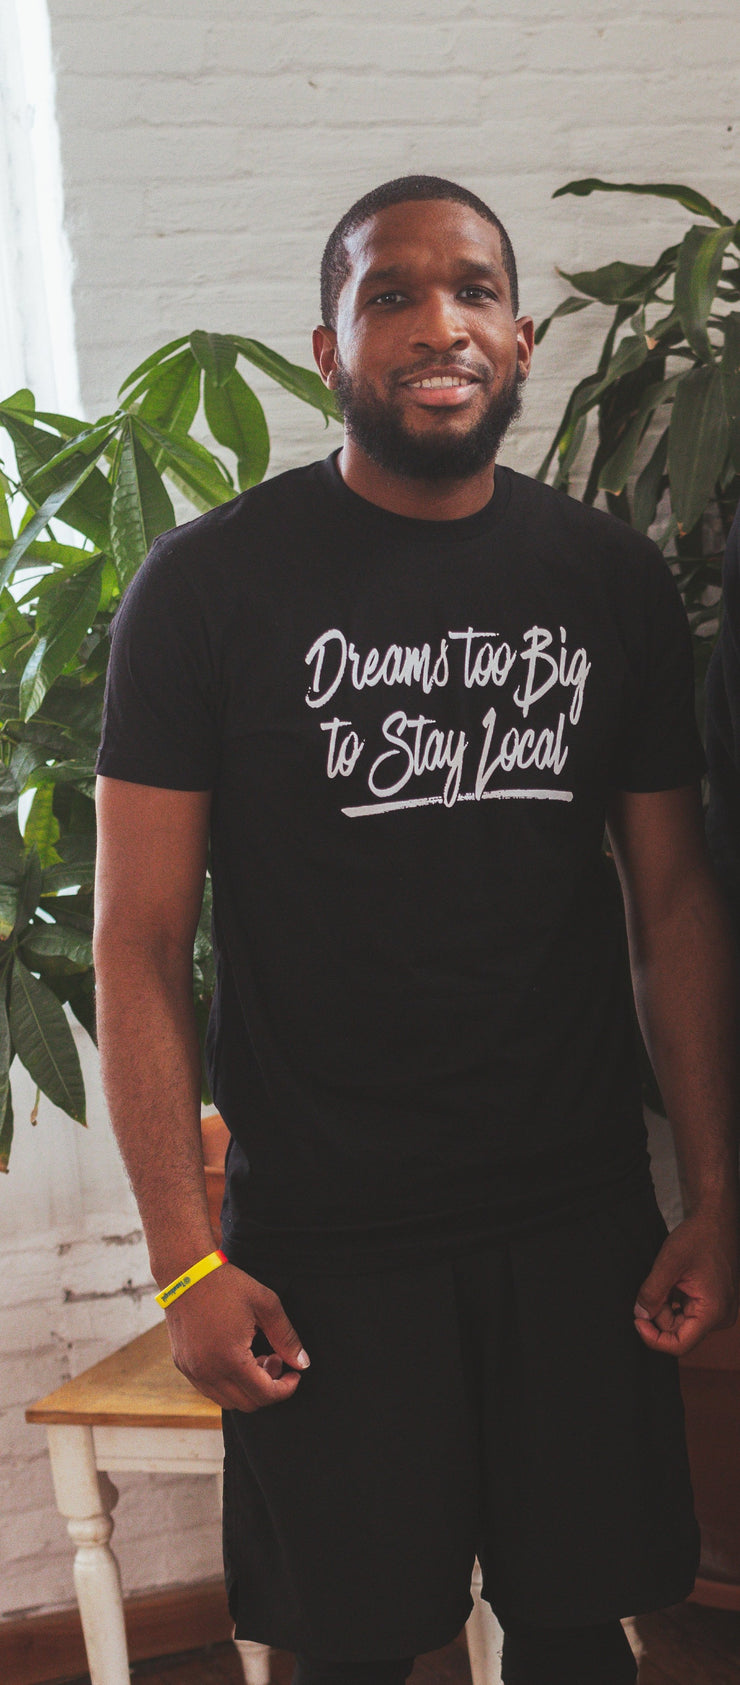 Dreams Unisex T-Shirt